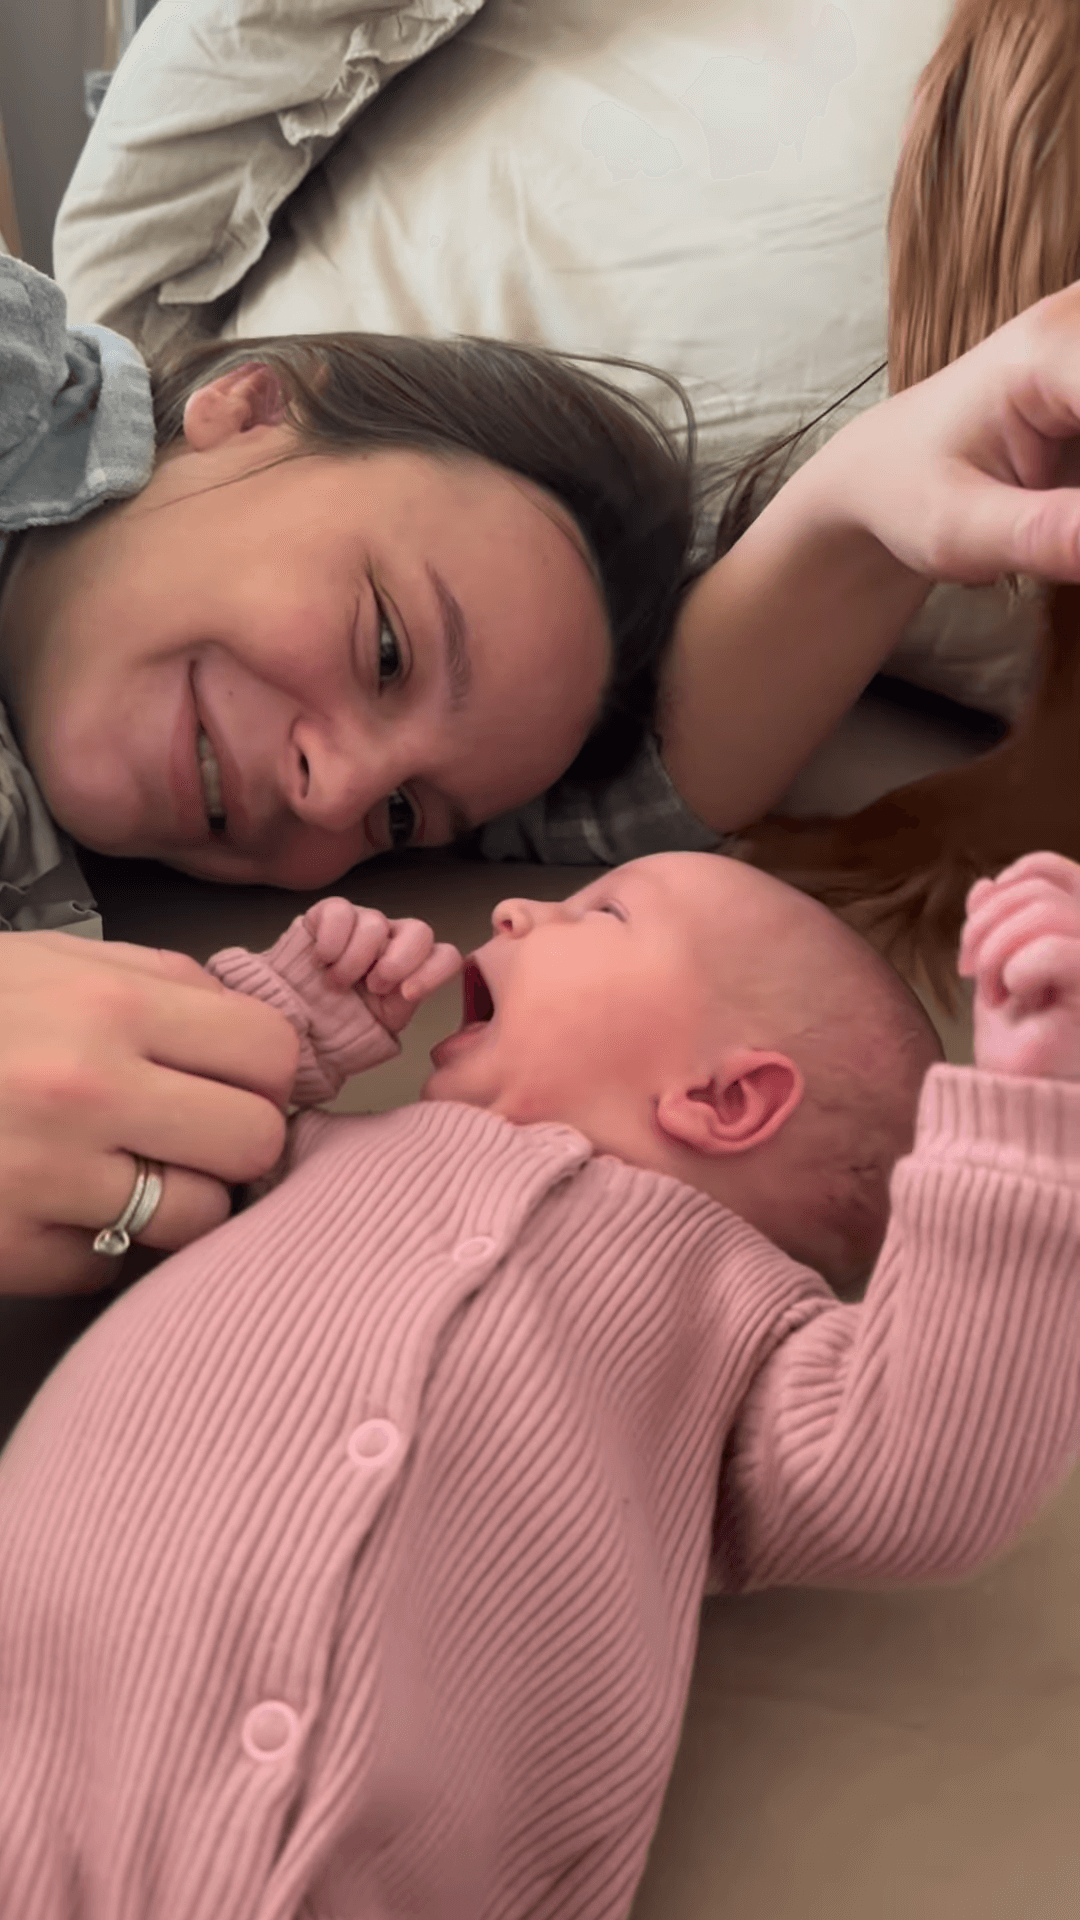 Jakub i Paulina Rzeźniczak powitali na świecie wyczekiwaną córkę, fot. Instagram jakubrzezniczak25 2.png